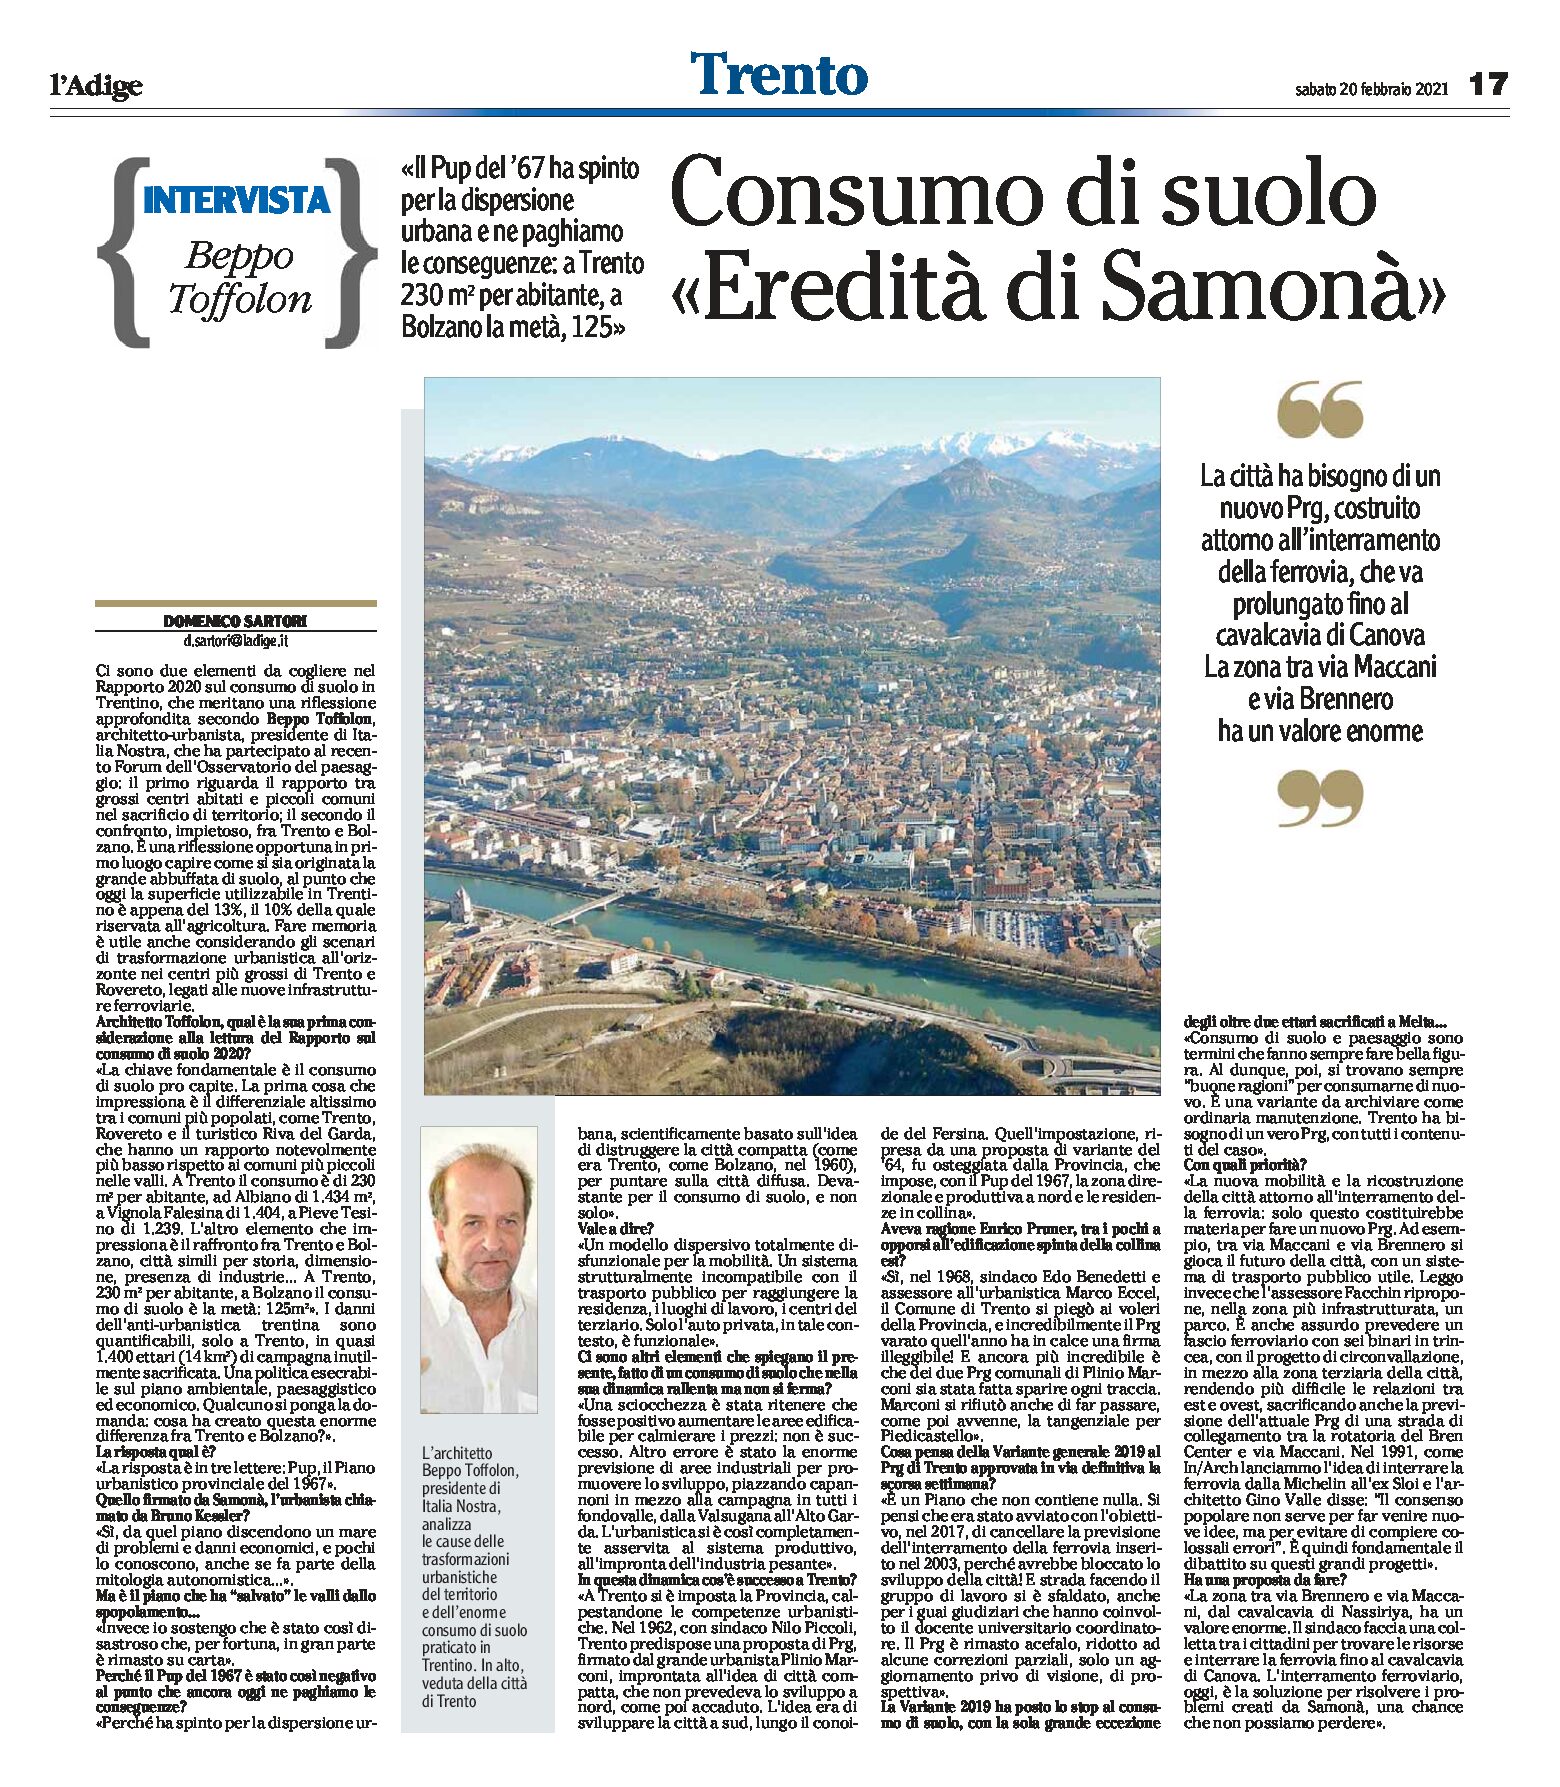 Trento: Rapporto 2020 sul consumo di suolo “eredità di Samonà”. Intervista a Toffolon